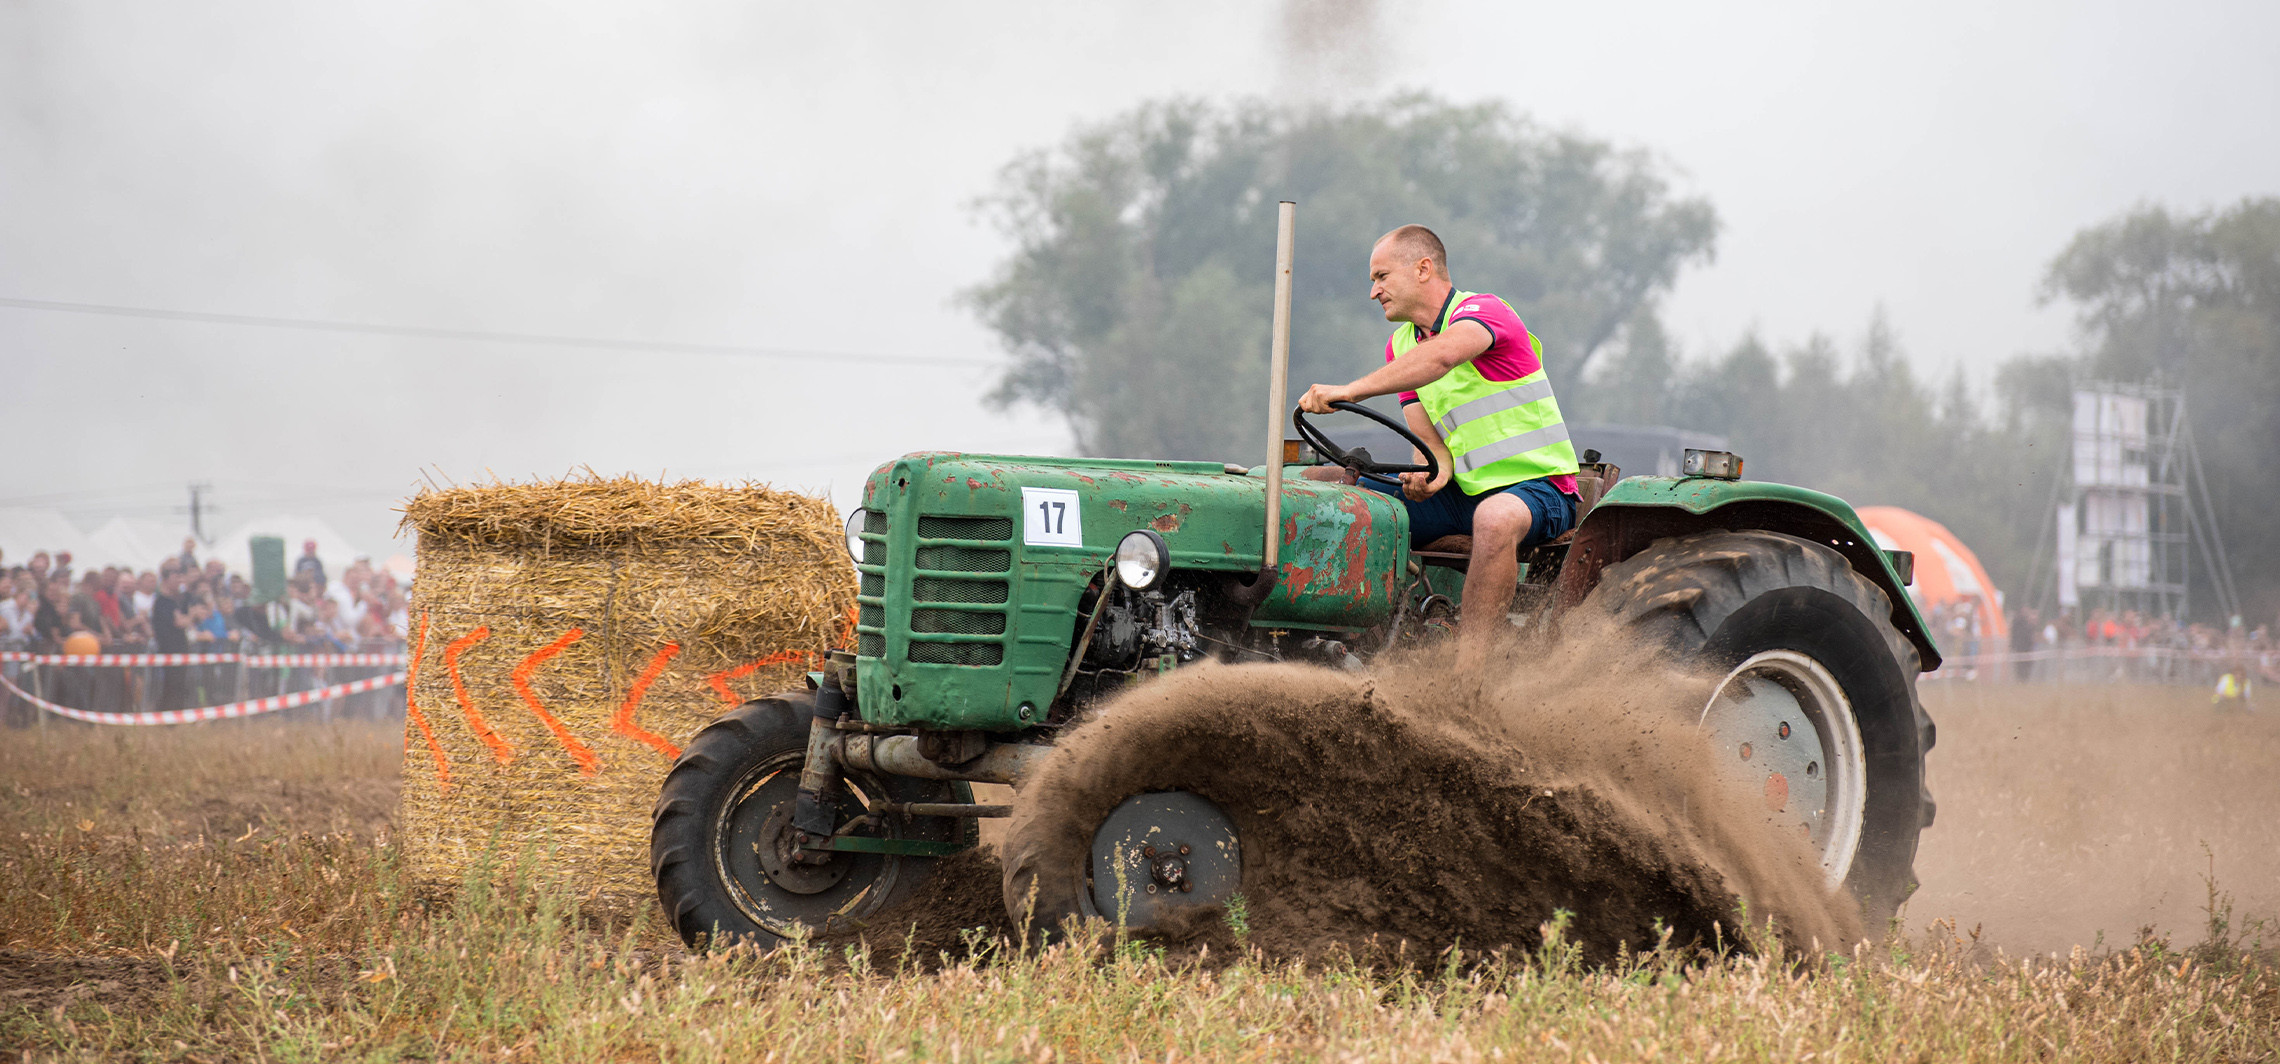 Inowrocław - Wyścigi traktorów w tym roku odbędą się w… Inowrocławiu!